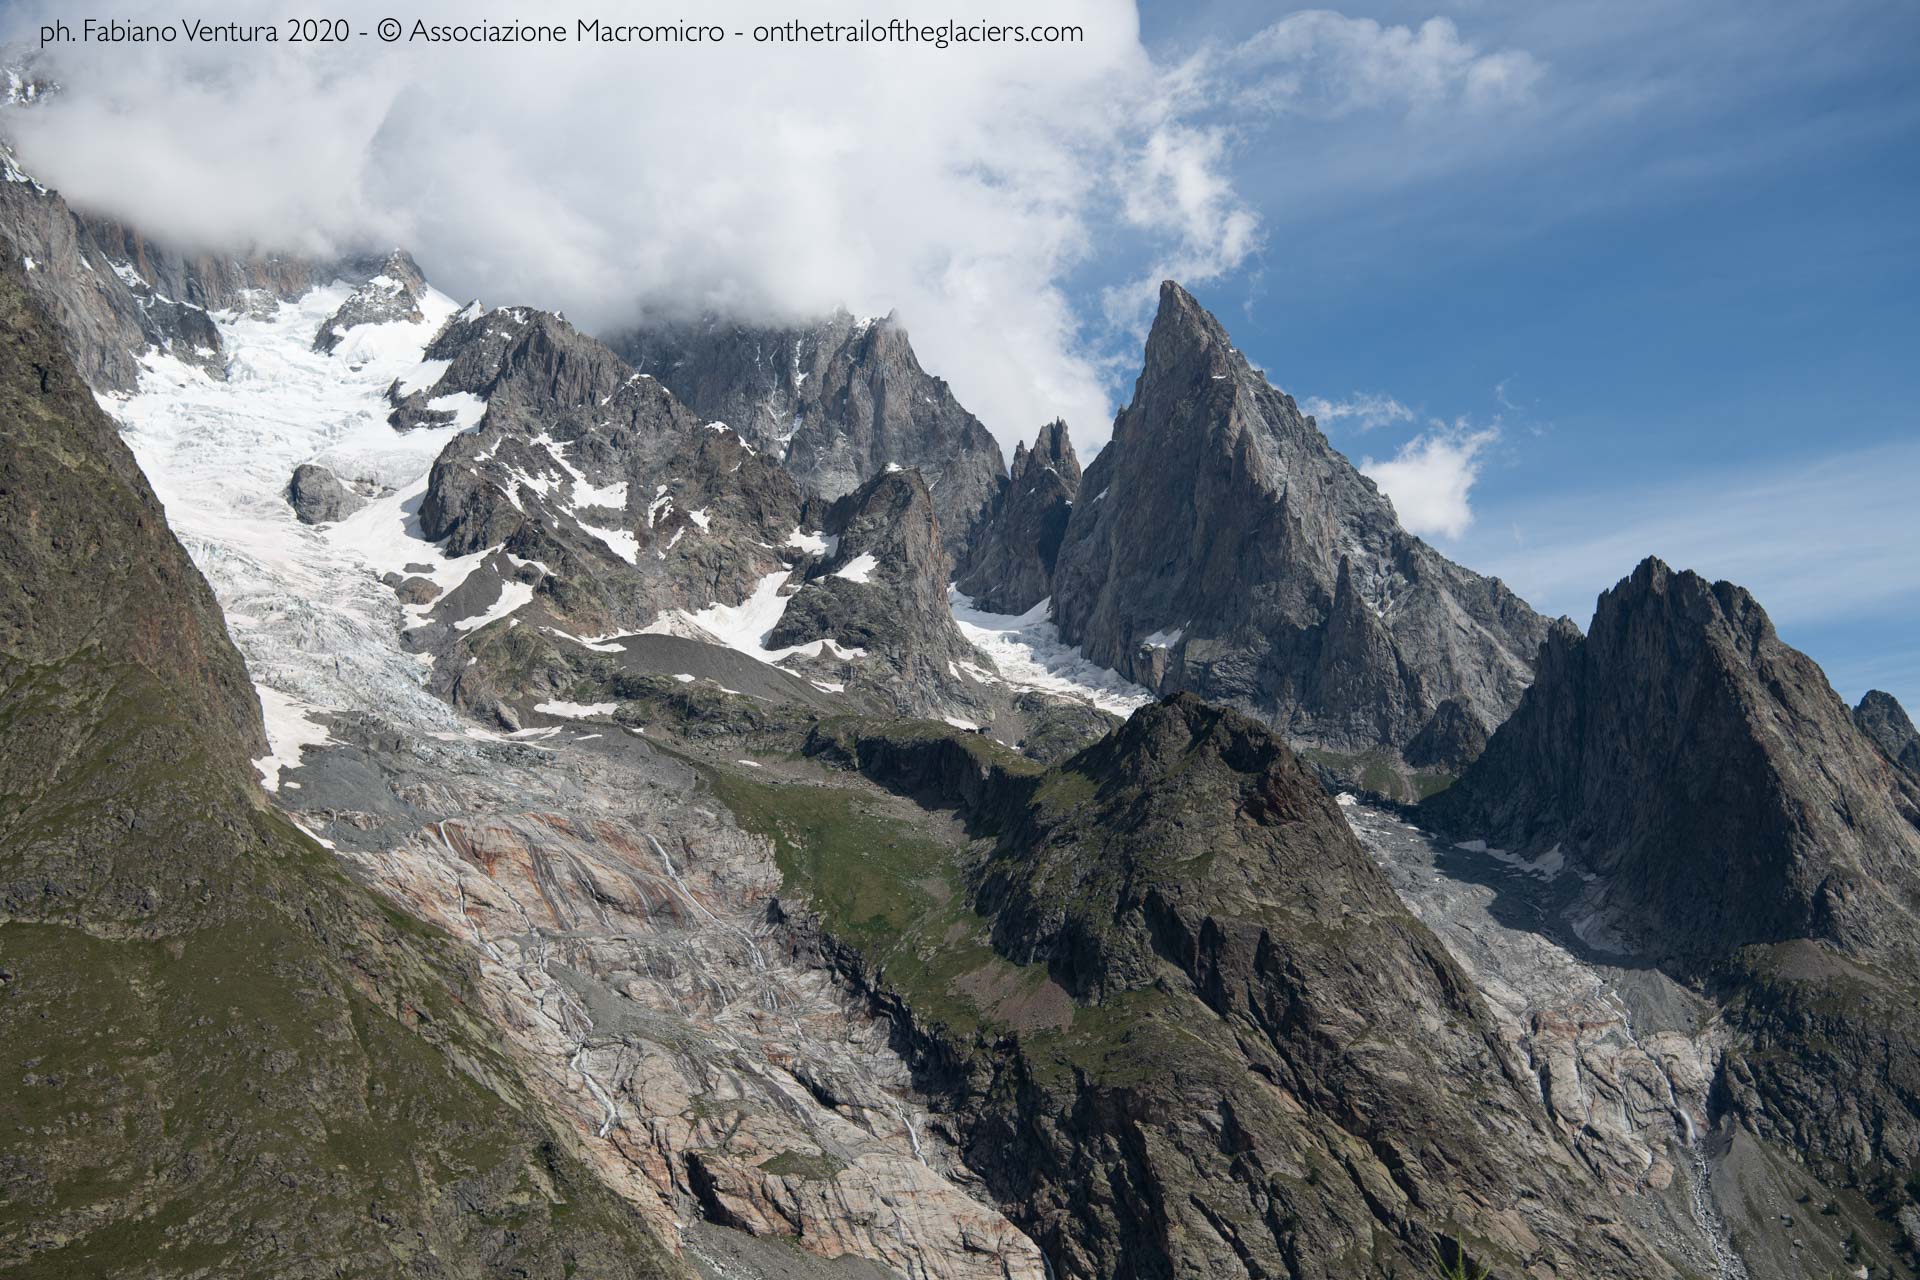 "Sulle tracce dei ghiacciai - Alpi 2020". Foto di Fabiano Ventura © Associazione Macromicro - onthetrailoftheglaciers.com